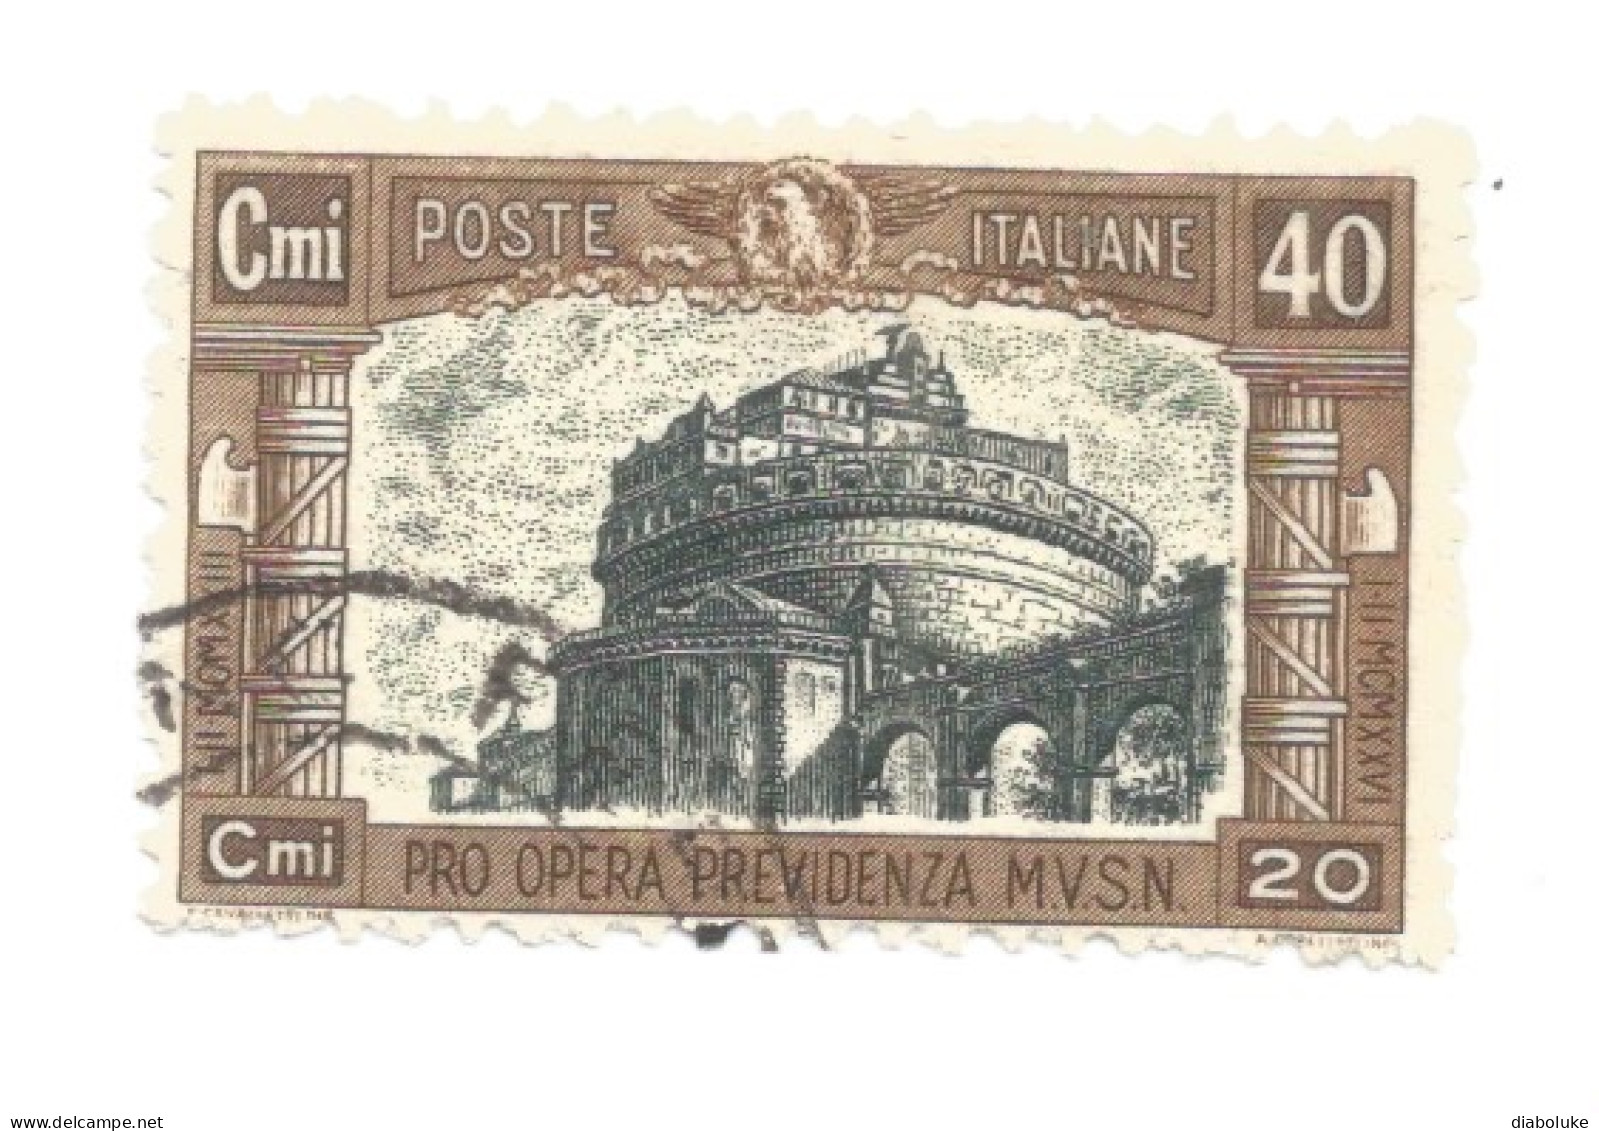 (REGNO D'ITALIA) 1926, PRO OPERA PREVIDENZIA MILIZIA - Serie Di 4 Francobolli Usati, Annulli Da Periziare - Luchtpost